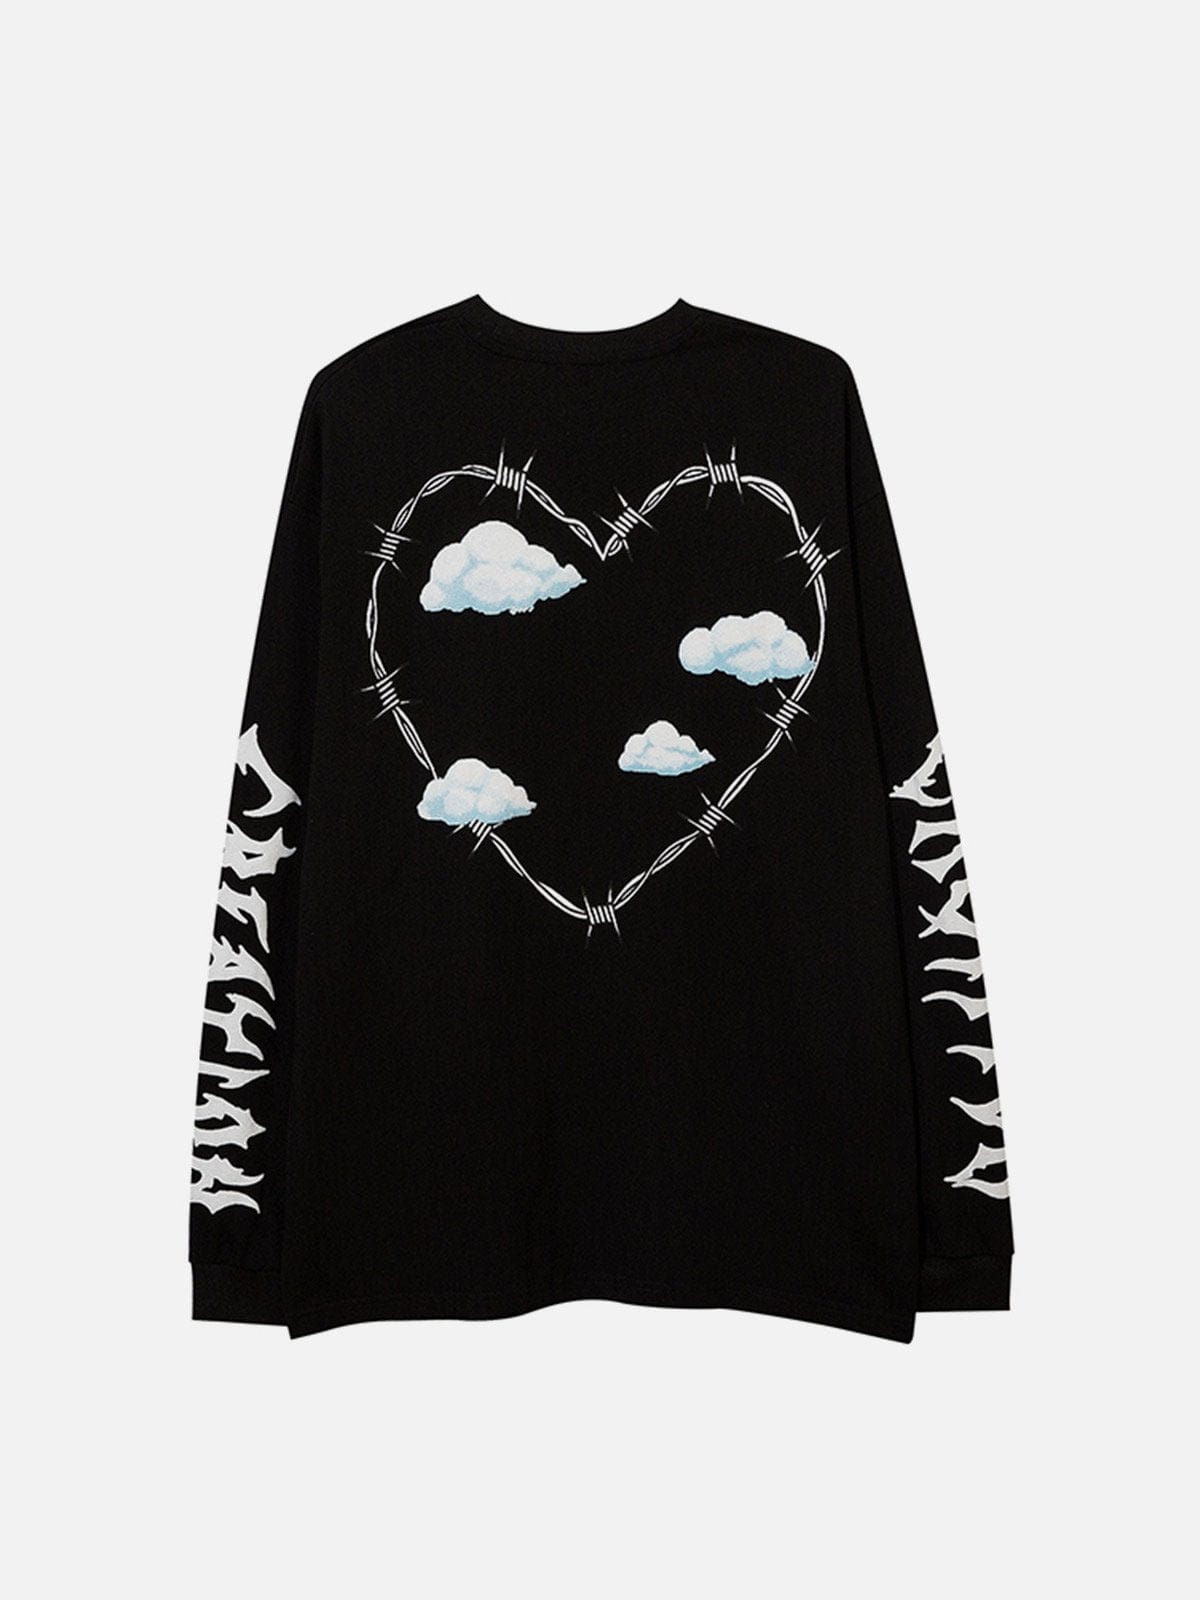 NEV Cloud Letters Sweatshirt